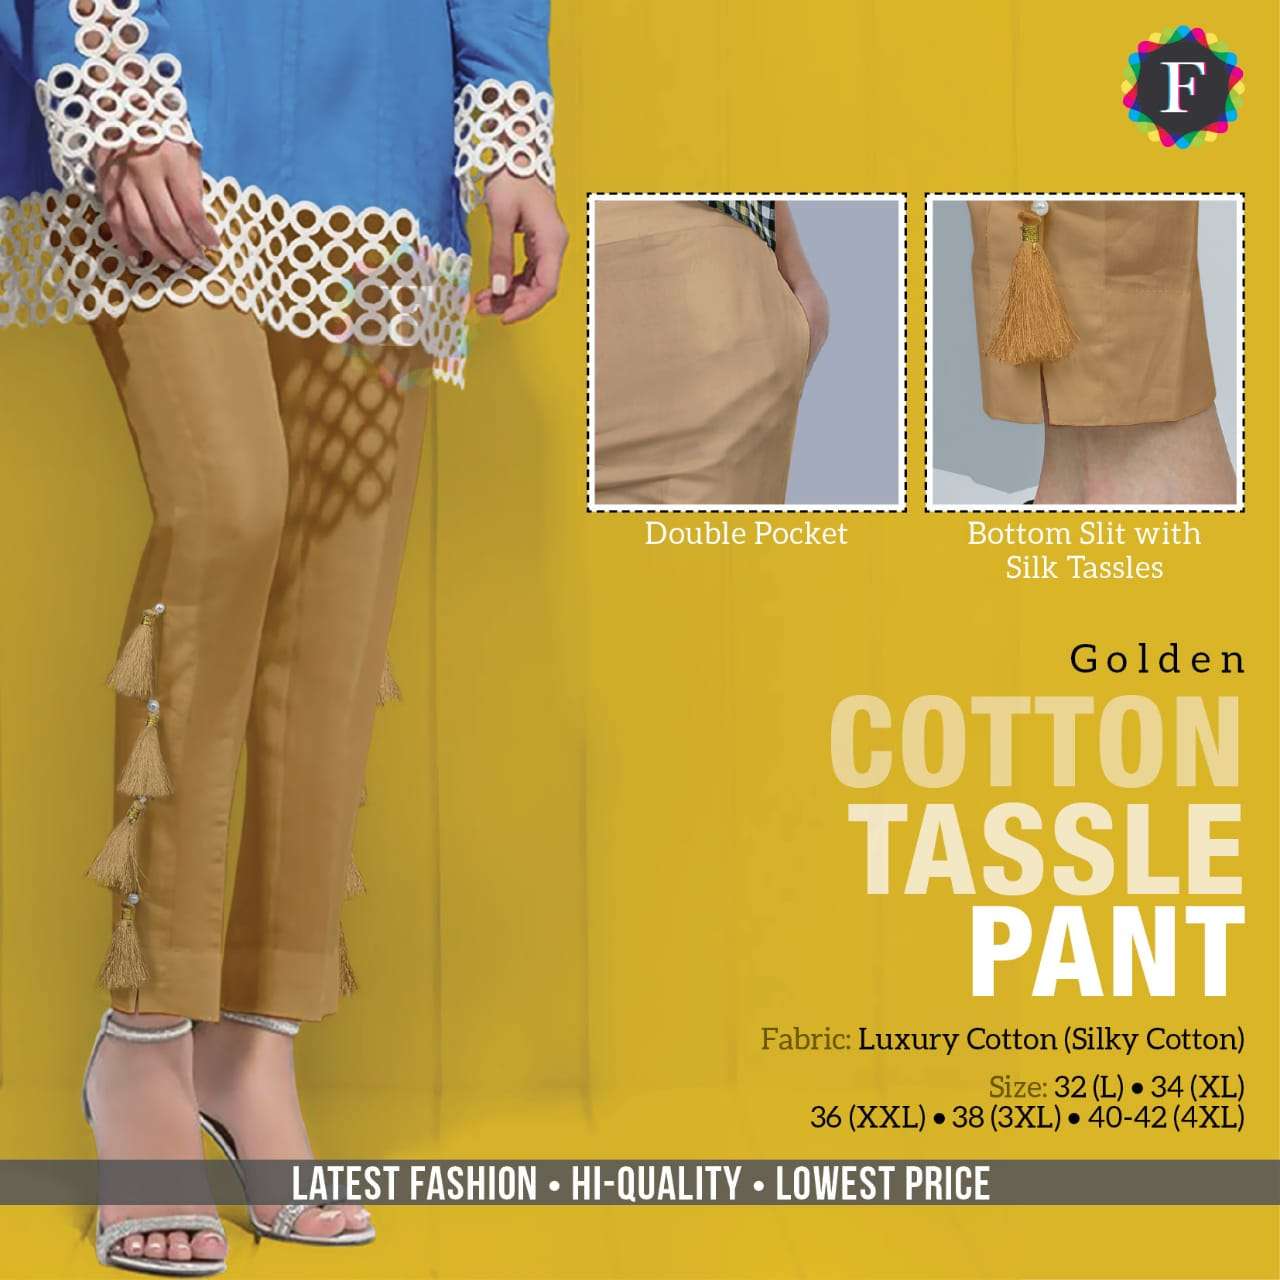 tassle pant pure luxury cotton pant 